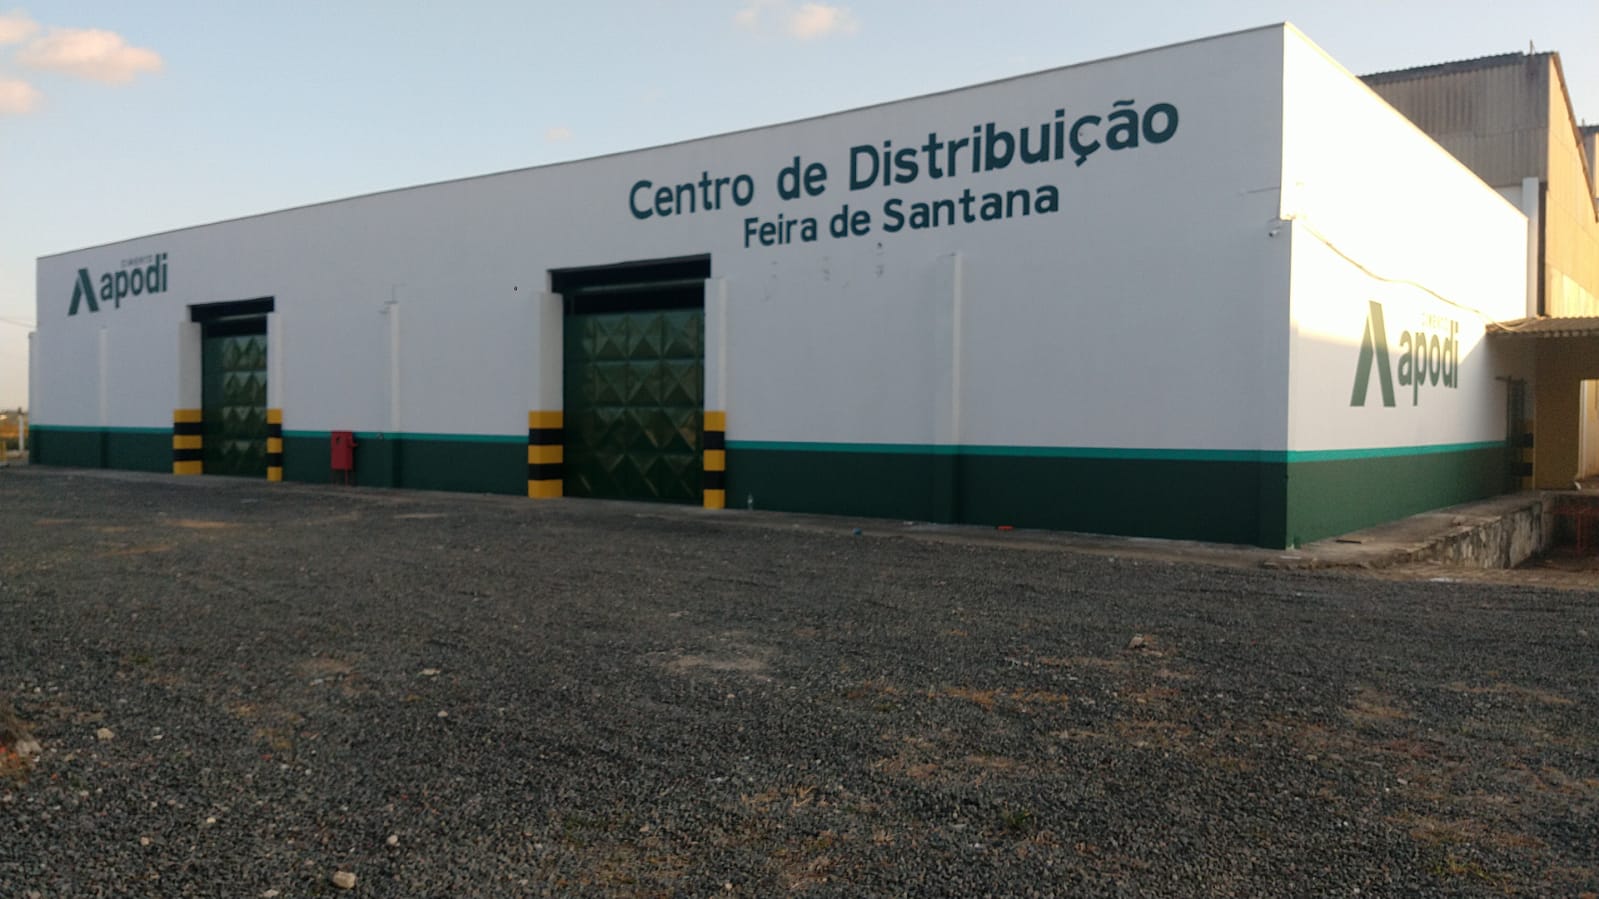 Cimento Apodi inaugura nova unidade em Feira de Santana/BA